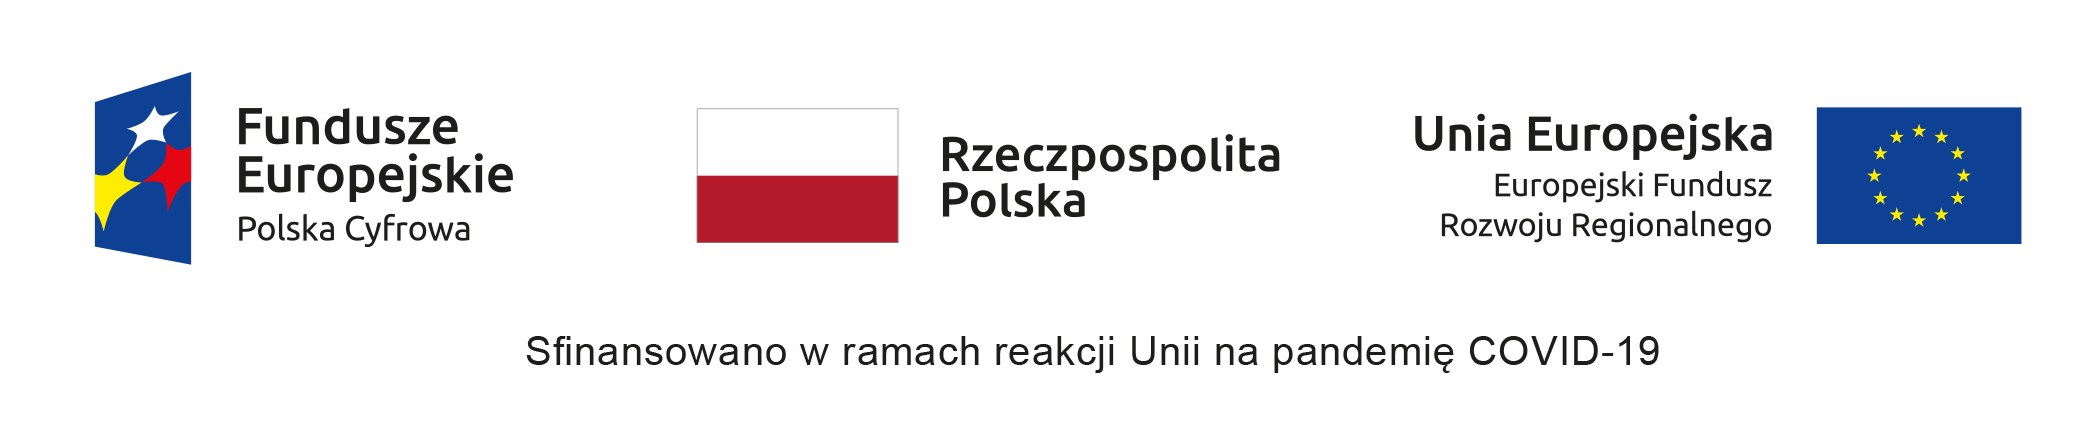 logotypy programu Polska Cygrowa, Flaga RP oraz flaga unijna z podpisem informującym o dofinansowaniu